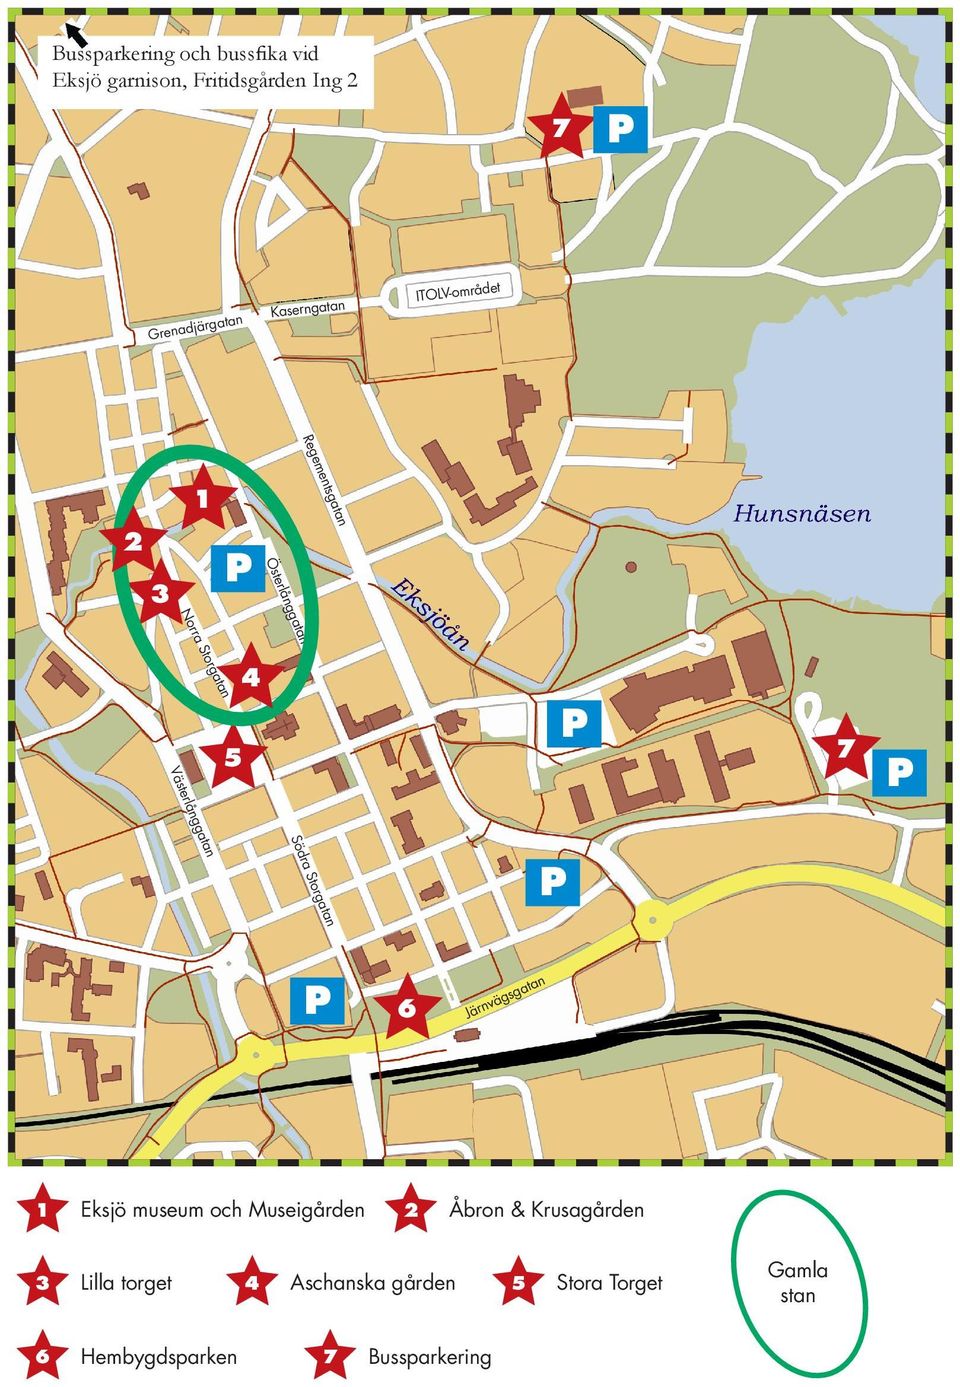 ra S Söd n ata ngg terlå Väs 5 1 Eksjö museum och Museigården 3 Lilla torget 6 Hembygdsparken 4